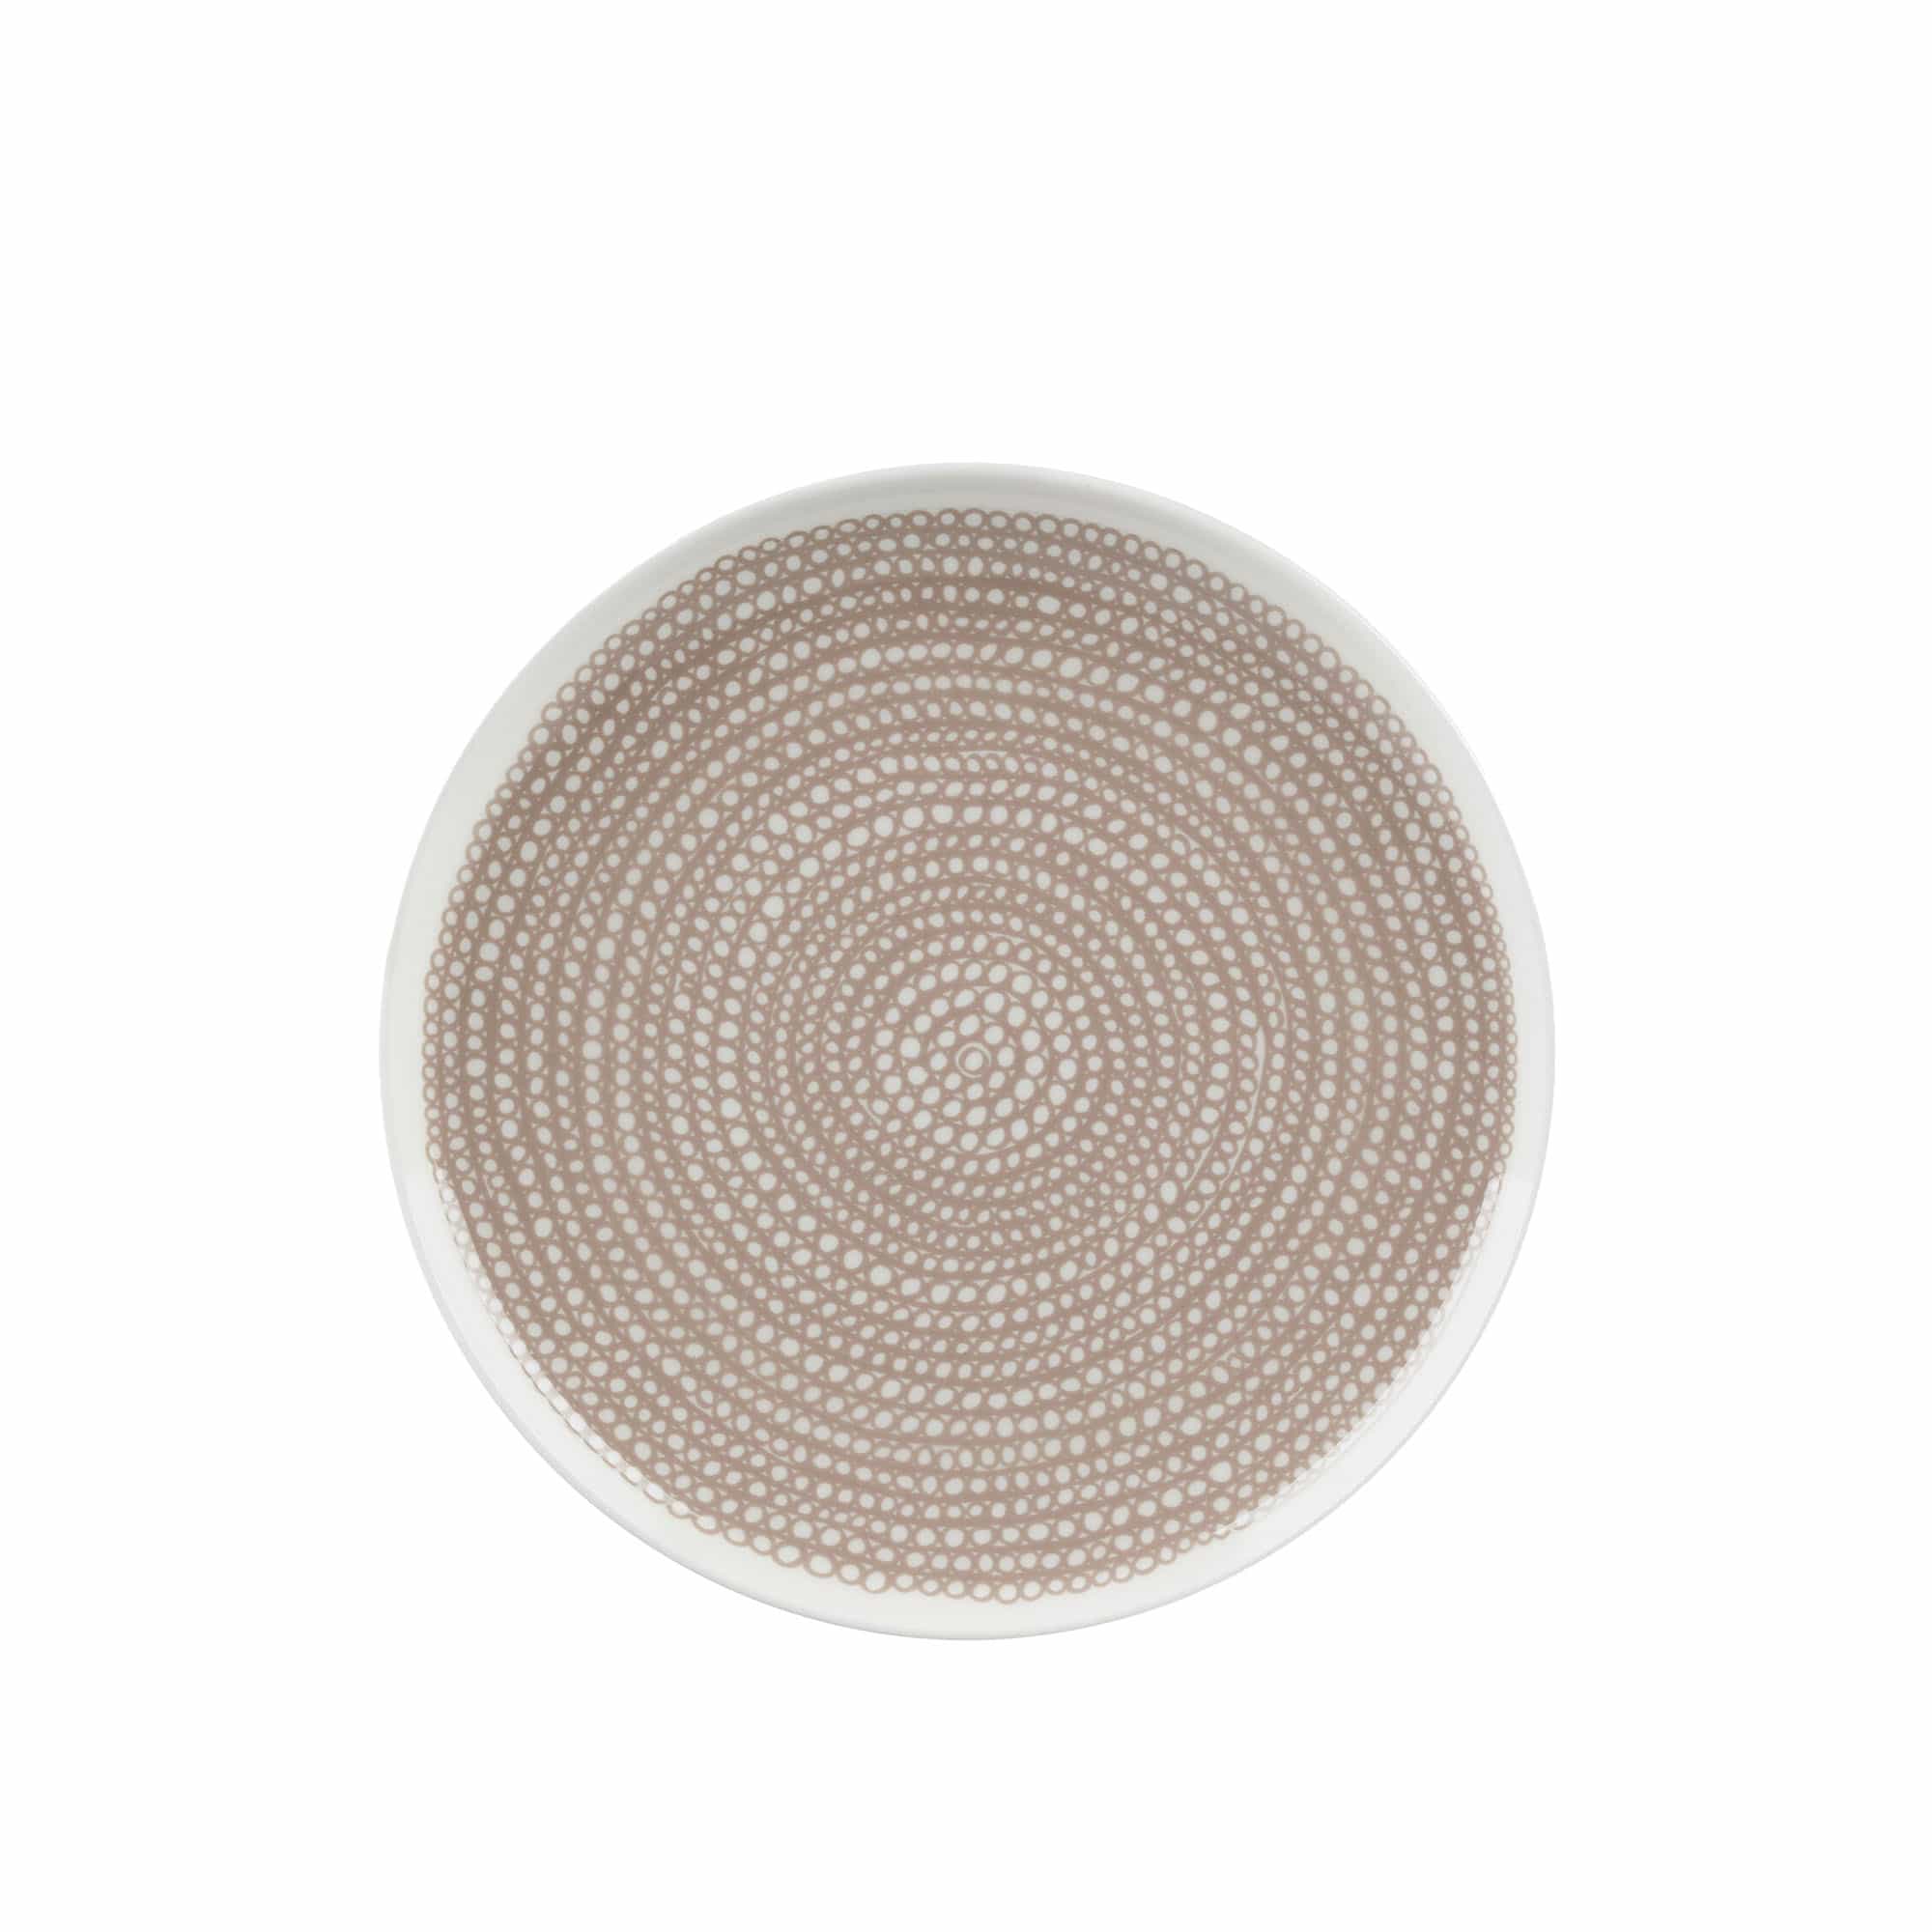 Siirtolapuutarha Plate 25 cm White, Beige